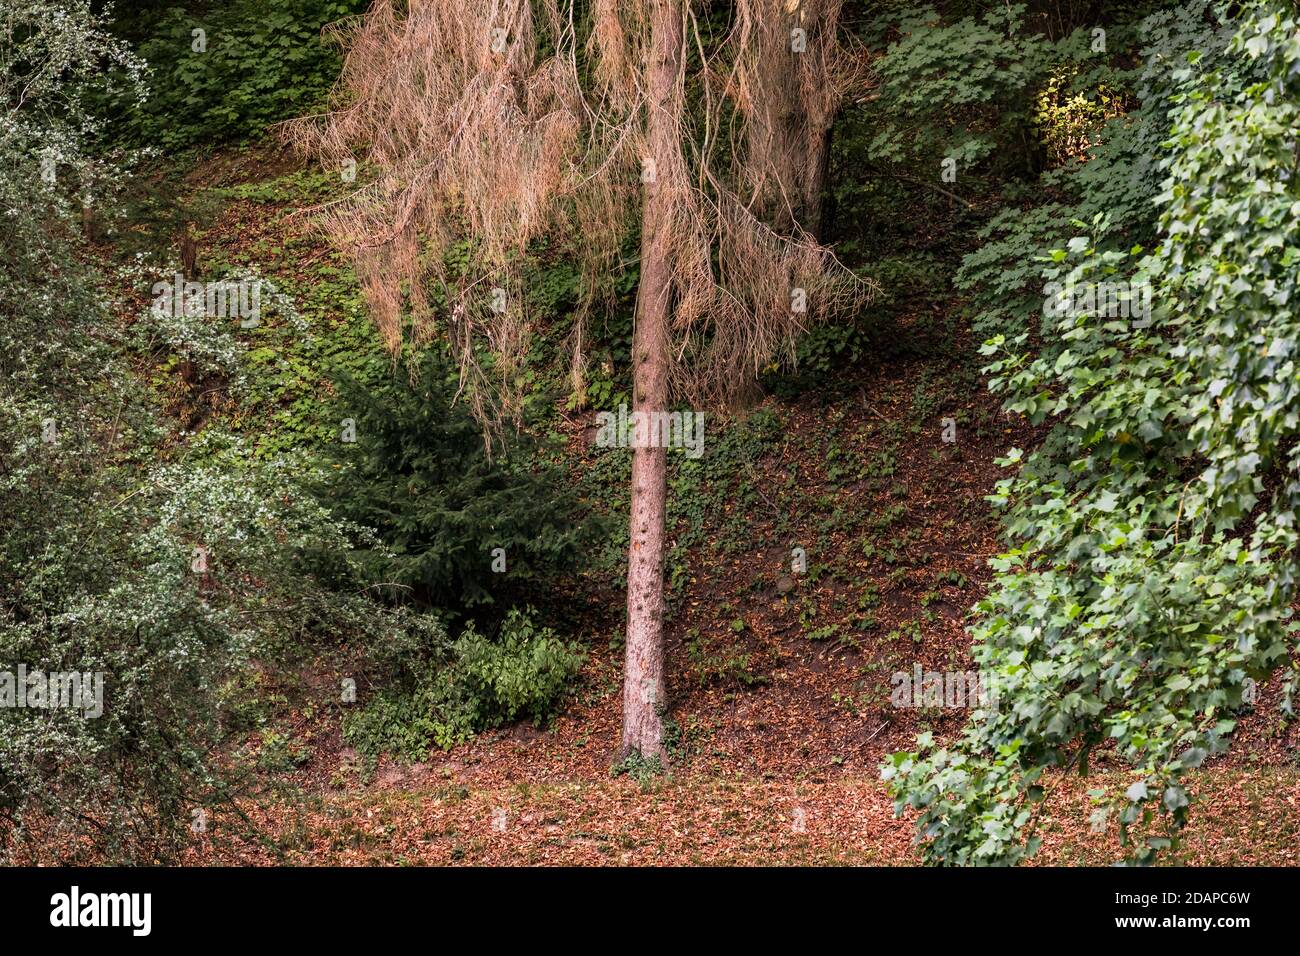 Fotografia di singoli alberi di abete rosso malati in un misto verde foresta in Germania Foto Stock